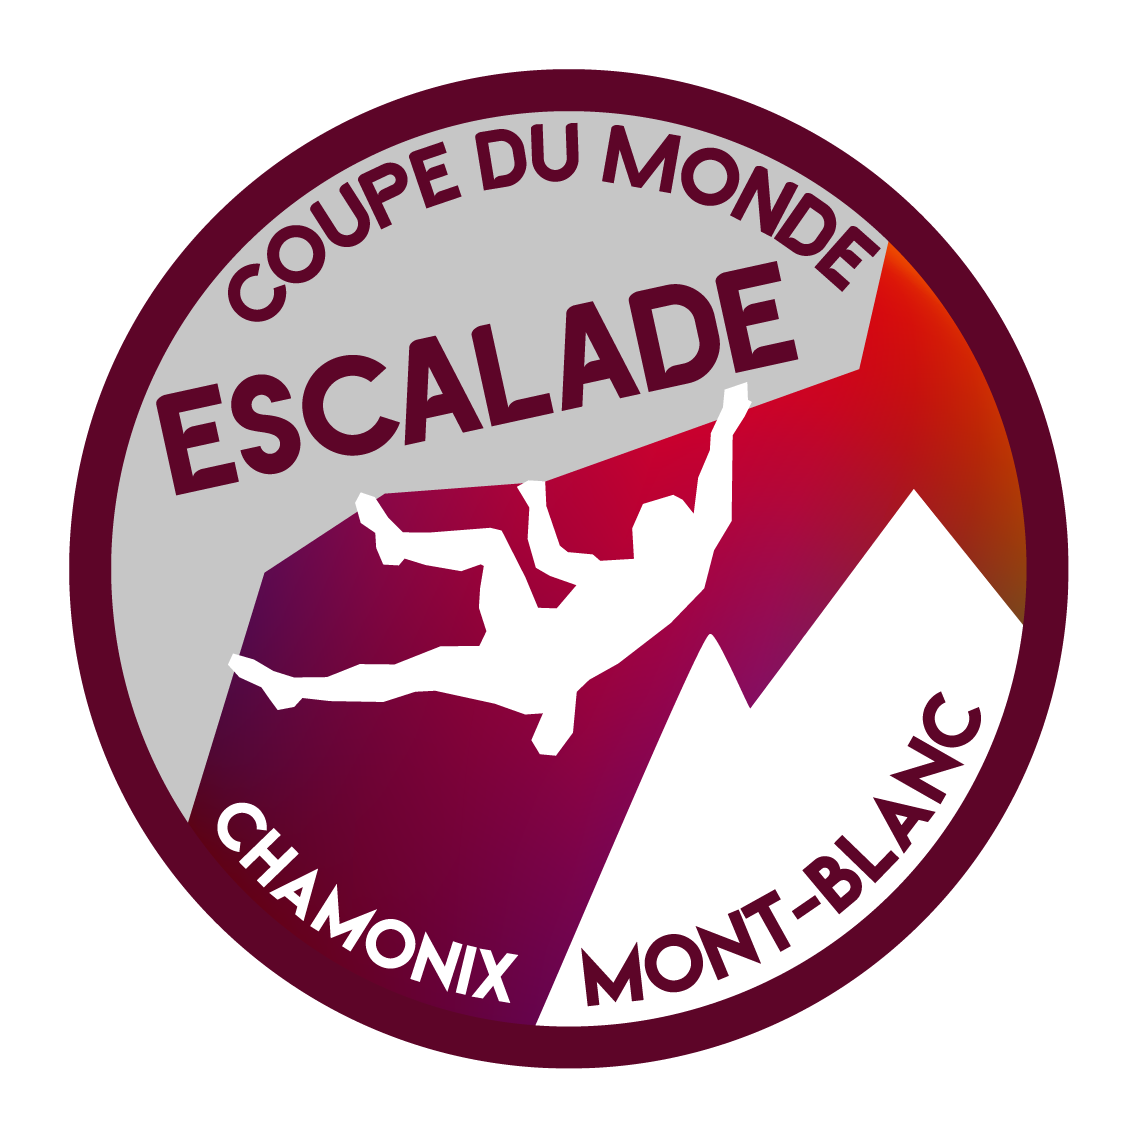 Section COUPE DU MONDE D'ESCALADE logo